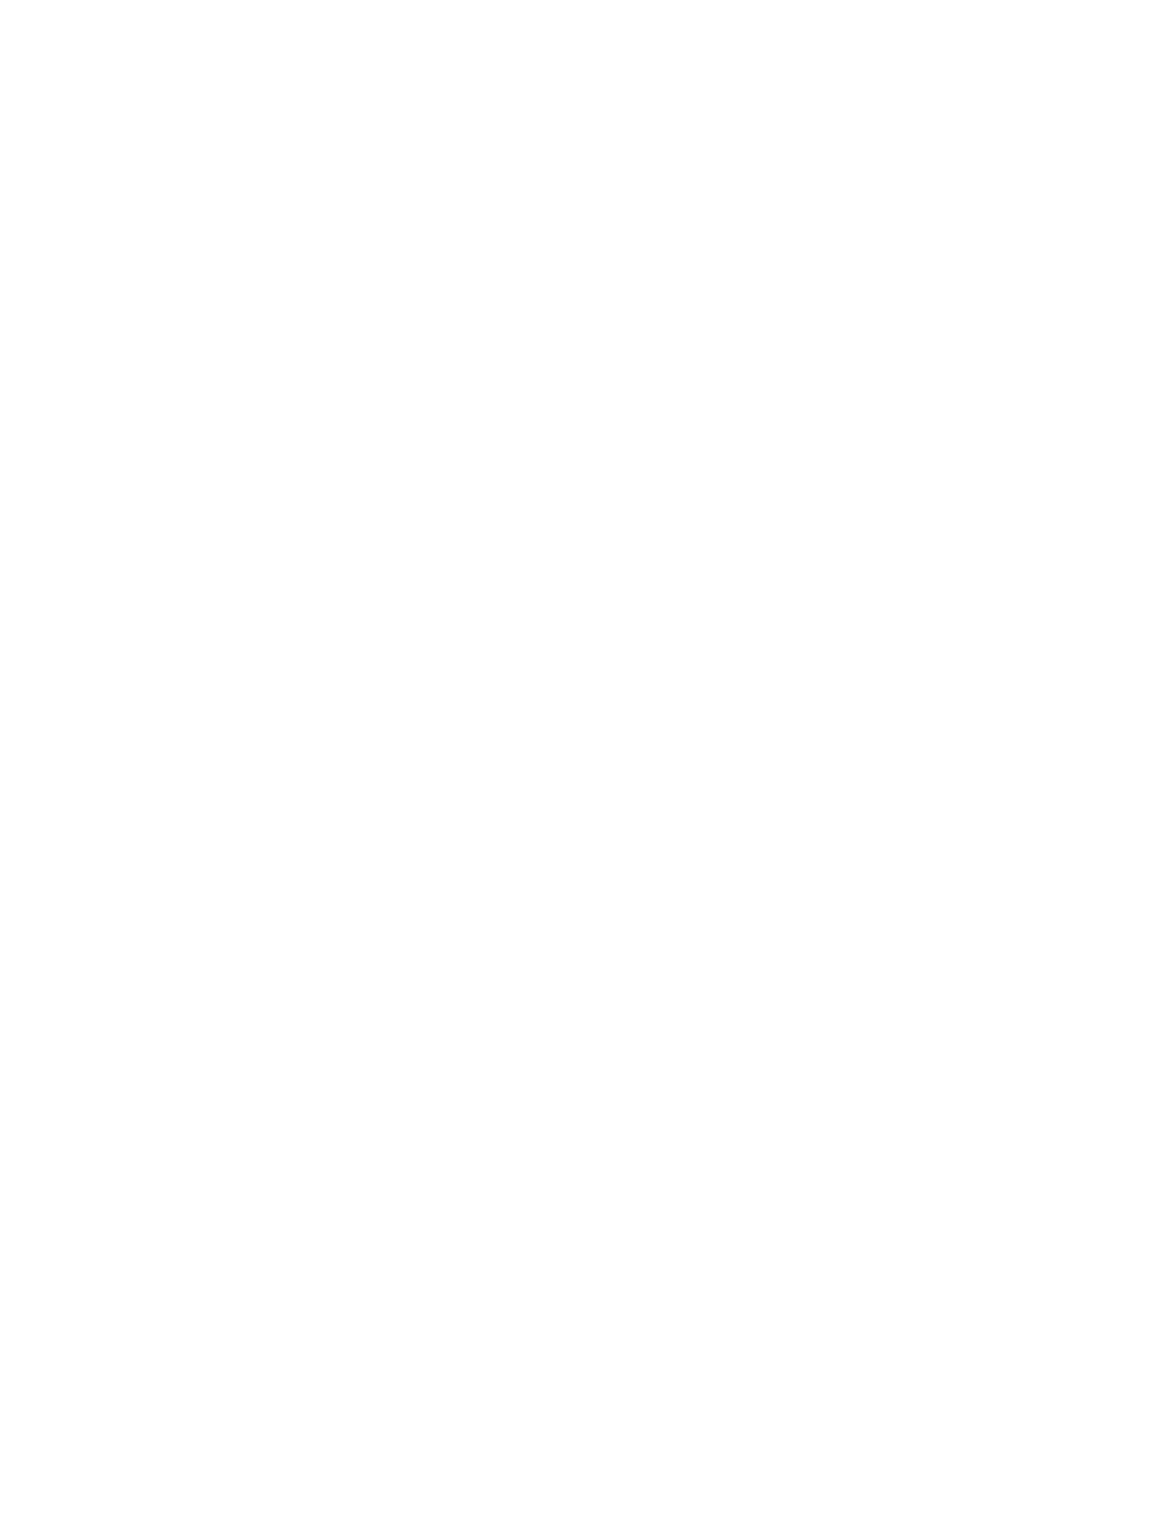 Central Securities logo pour fonds sombres (PNG transparent)